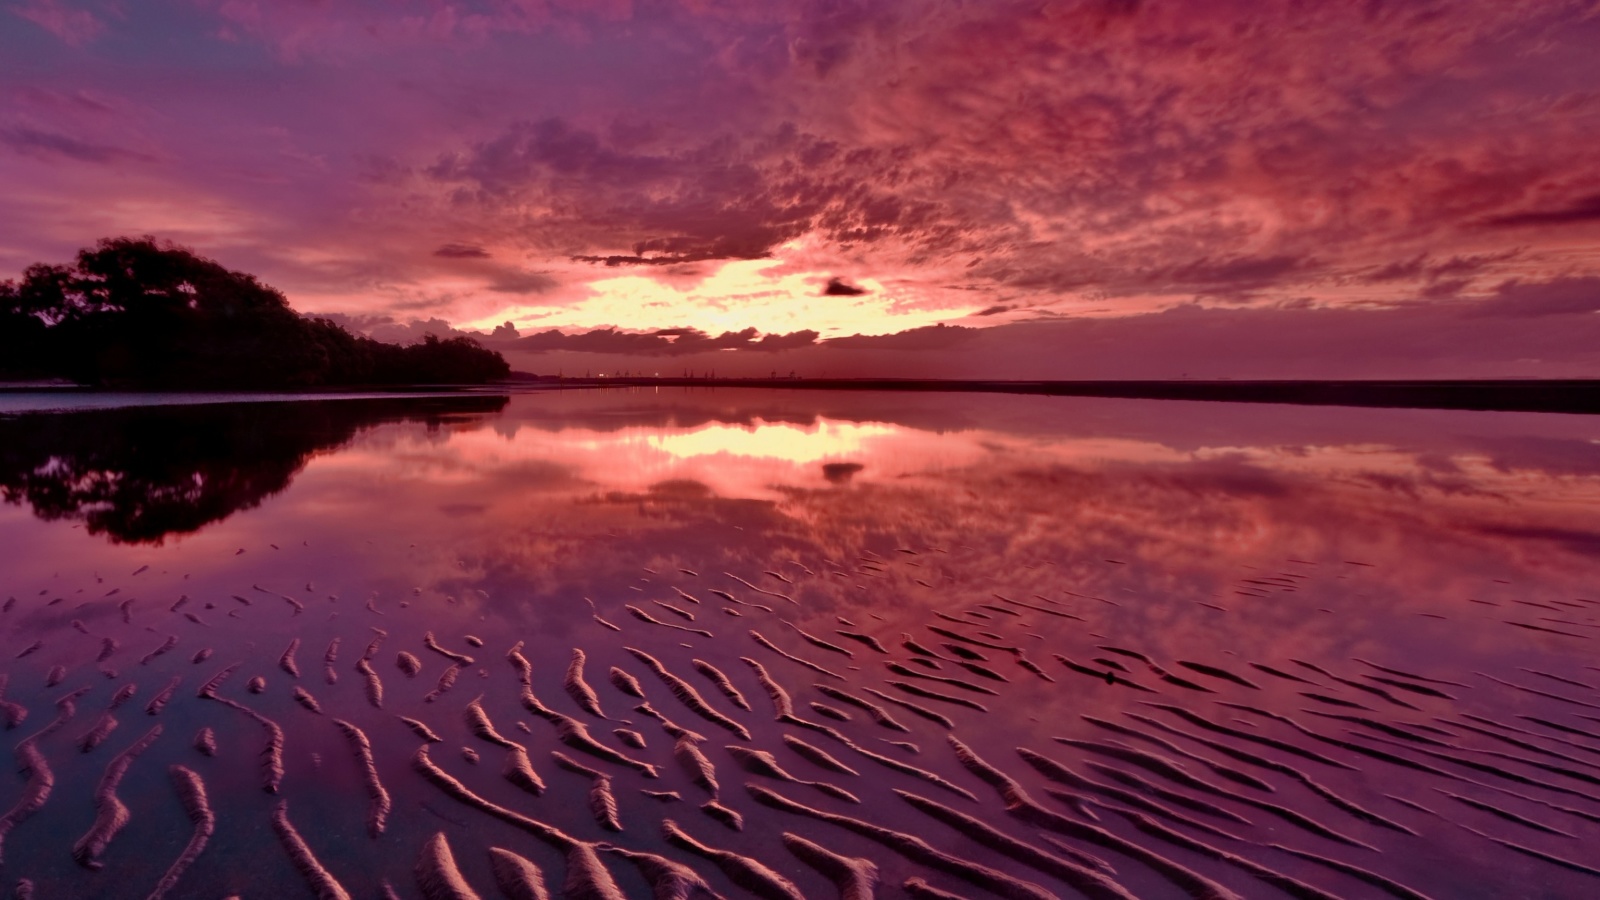 Обои Red Sunset and Lake Surface 1600x900